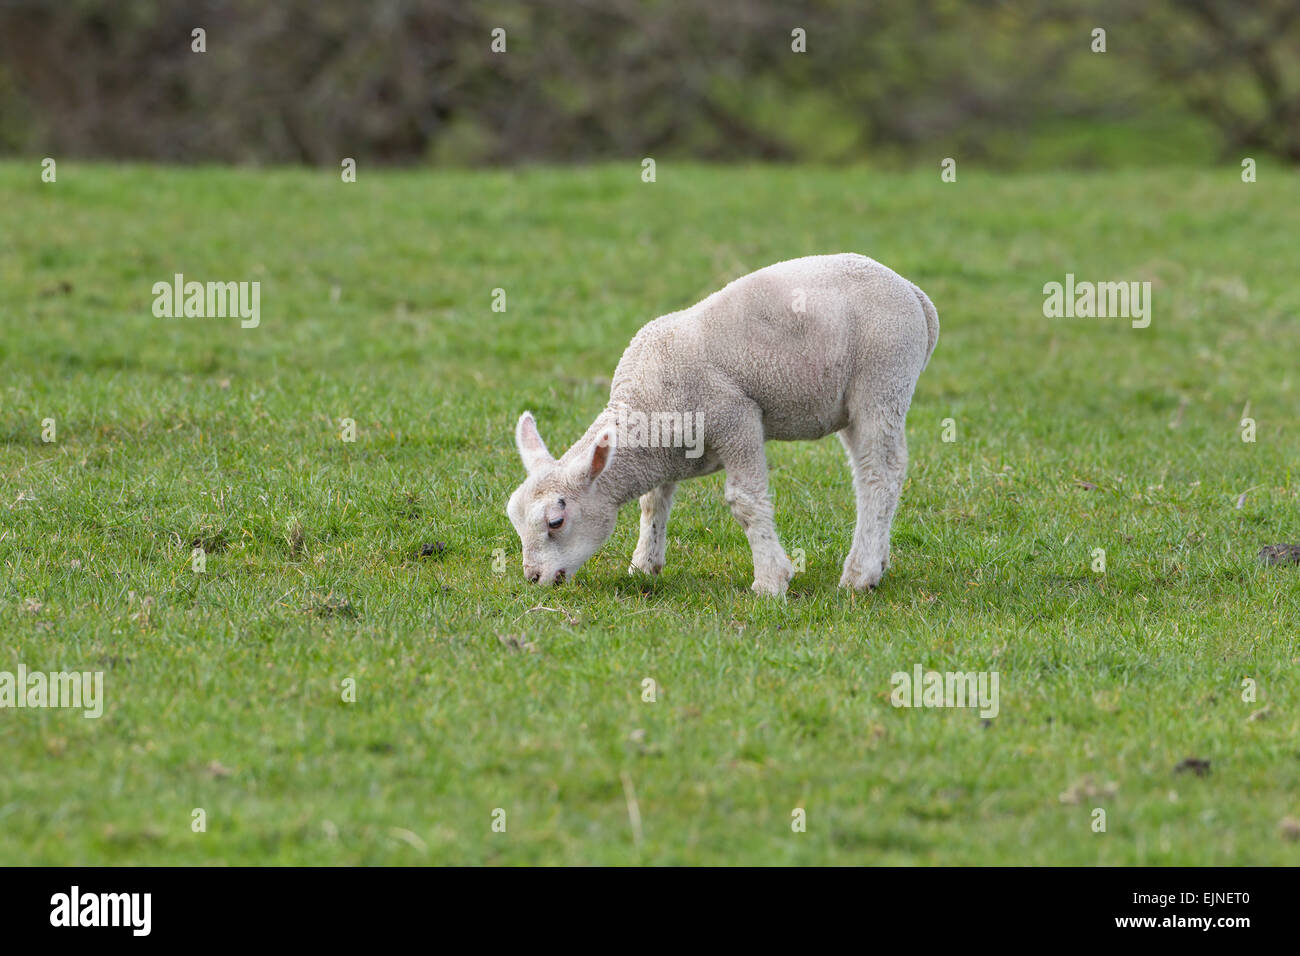 English primavera cordero comiendo hierba en el perfil en la tierras de labrantío Foto de stock